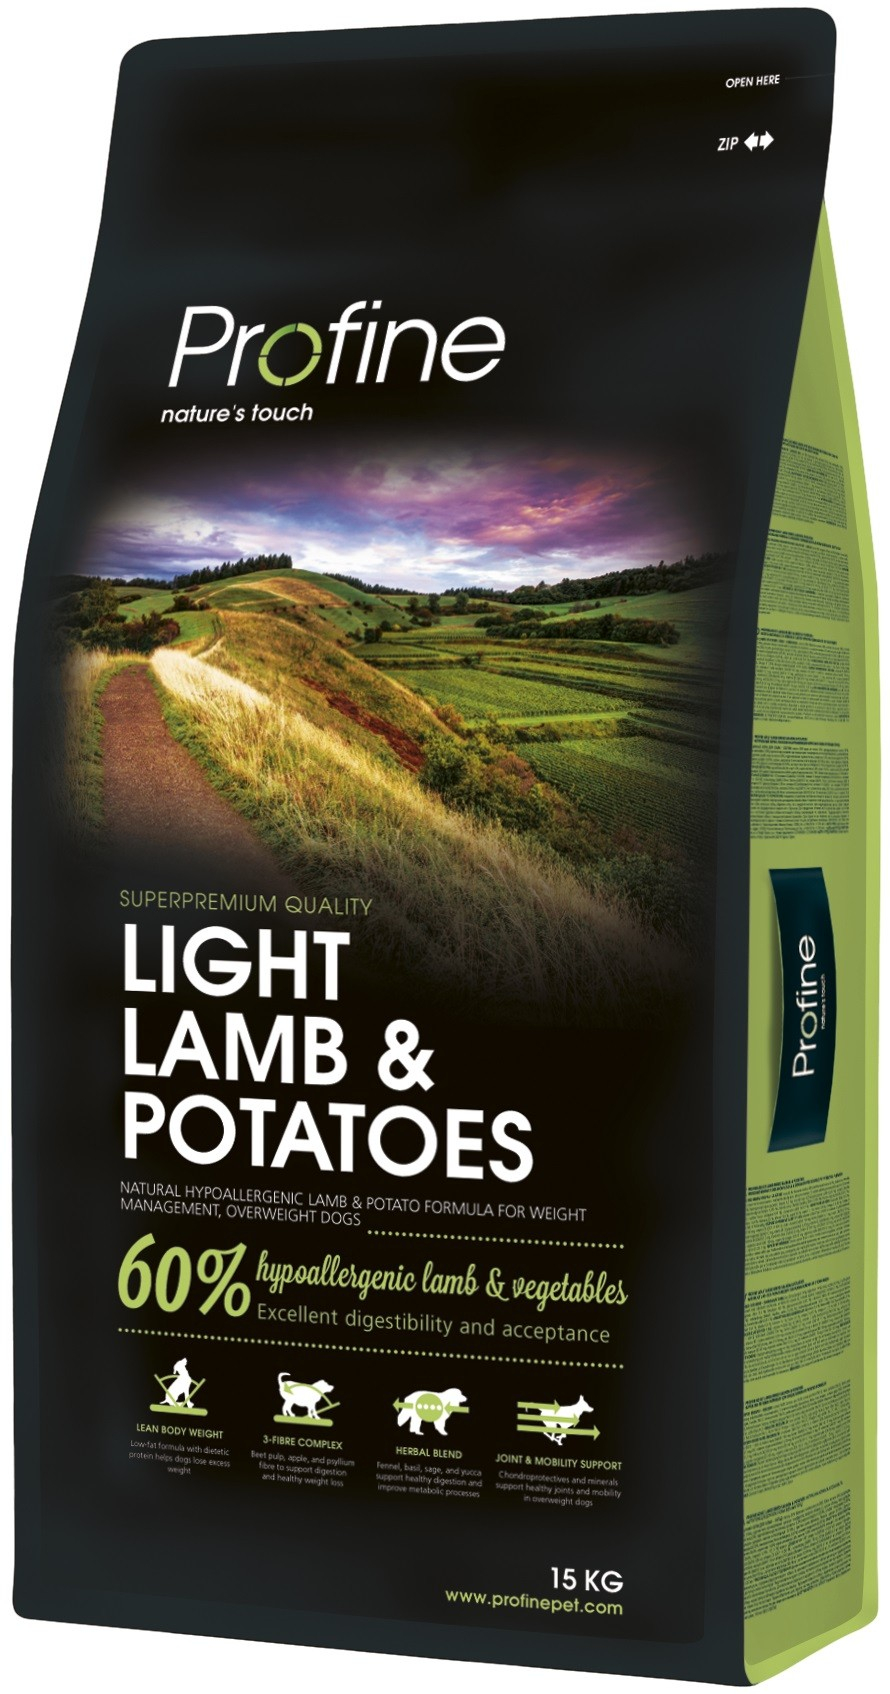 Profine Light Lamb and Potatoes pour le contrôle du poids